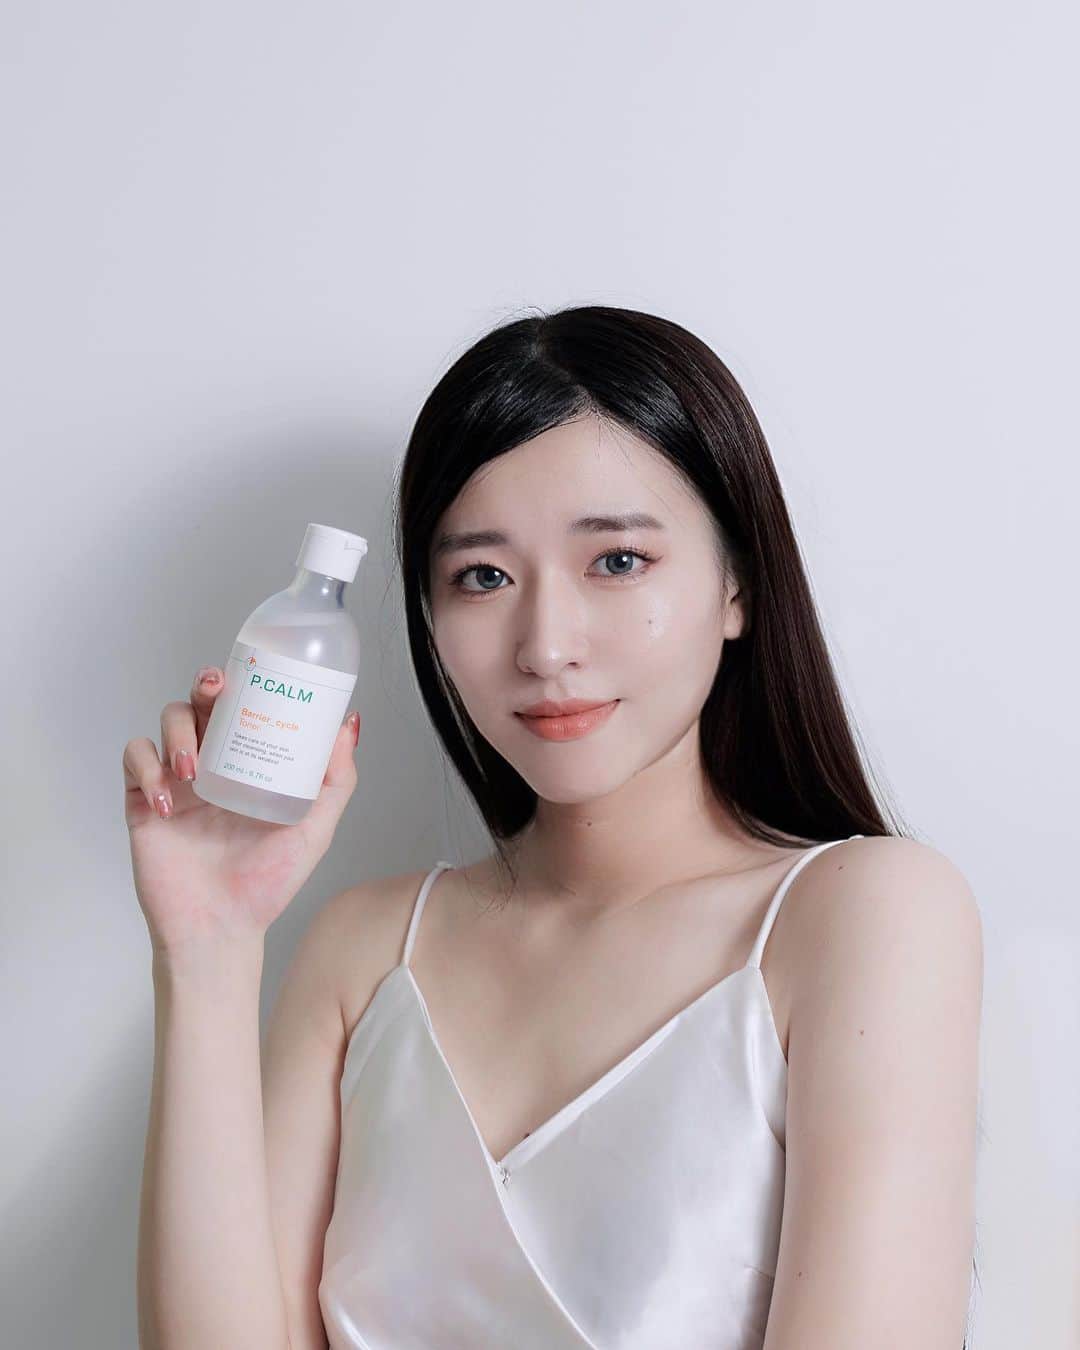 ぷかのインスタグラム：「𝗣.𝗖𝗔𝗟𝗠「ピーカム」 ・ ・ 「𝗣.𝗖𝗔𝗟𝗠」は日本で有名な複数の韓国スキンケアブランドから集まり やけど治療を基にした肌に優しい特に敏感肌のために研究したスキンケアプロジェクトで 「𝗣.𝗖𝗔𝗟𝗠」のすべての製品は、 環境にも考慮し作られた製品になってるよ❤︎ ・ ・ まだ日本ではあまり知られていないけど韓国ではオリーブヤング化粧水部門で１位取得していて、かなりリピート率が高い商品になってるらしい☺️🌿 ・ ・ Qoo10で発売されてるから検索してみてね👌🏻 ・ ・ ・ #pcalm #ピーカム #韓国コスメ #韓国スキンケア #スキンケア #フリーモデル #フリーモデル東京 #トラブル肌  #広告モデル #敏感肌 #ニキビ肌 #化粧水 #韓国人気コスメ #化粧水 #トナー #オリーブヤング #リピ確定 #Qoo10#メガ割 #韓国通販サイト」